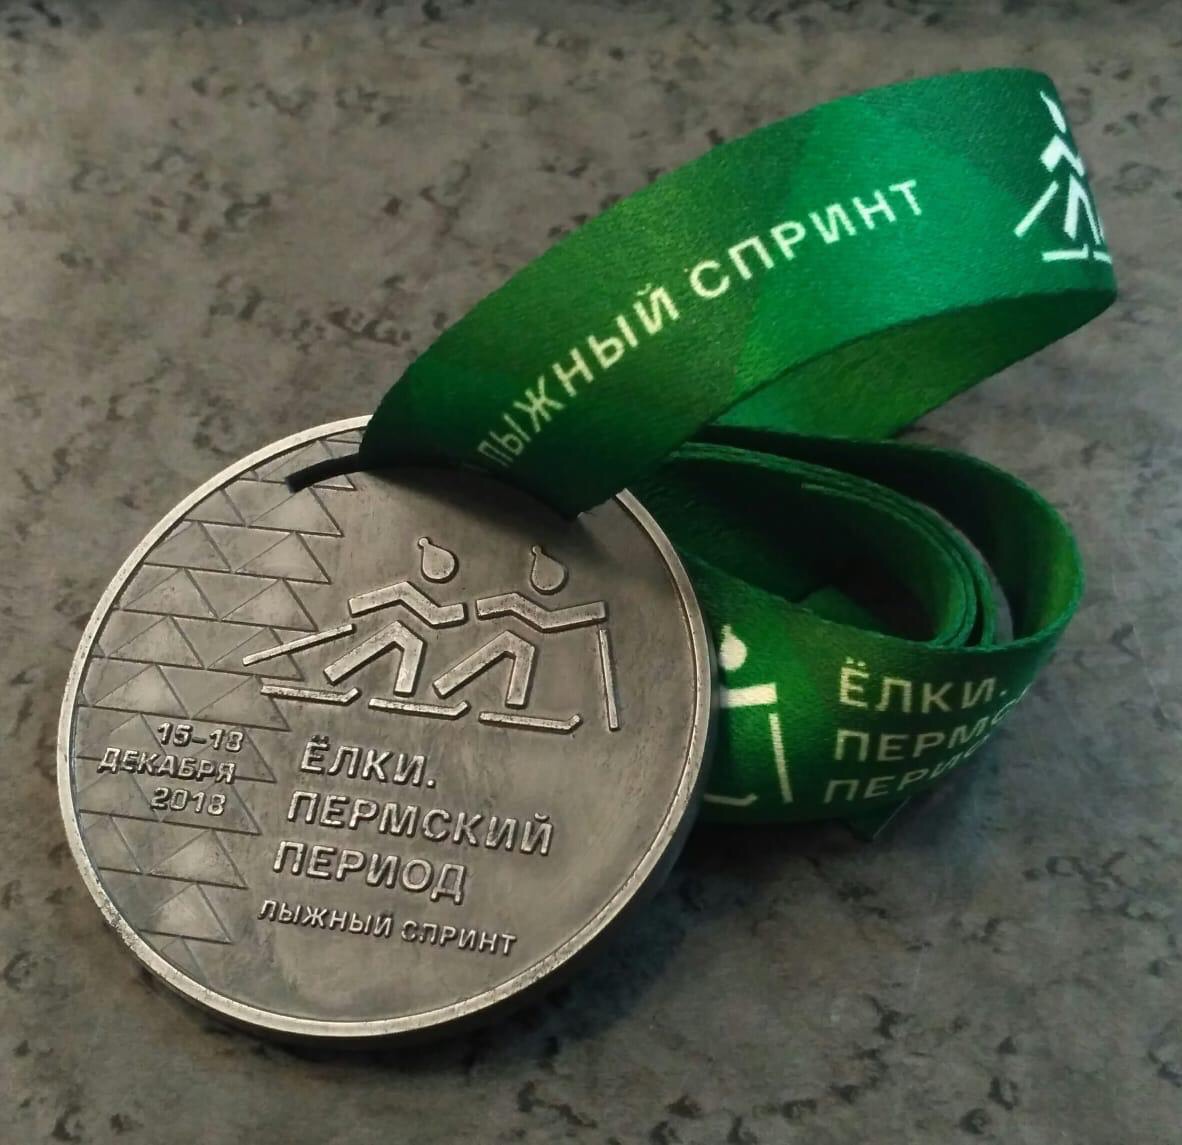 В Перми представили медаль городского лыжного спринта «Ёлки. Пермский период». Её получит каждый финишировавший